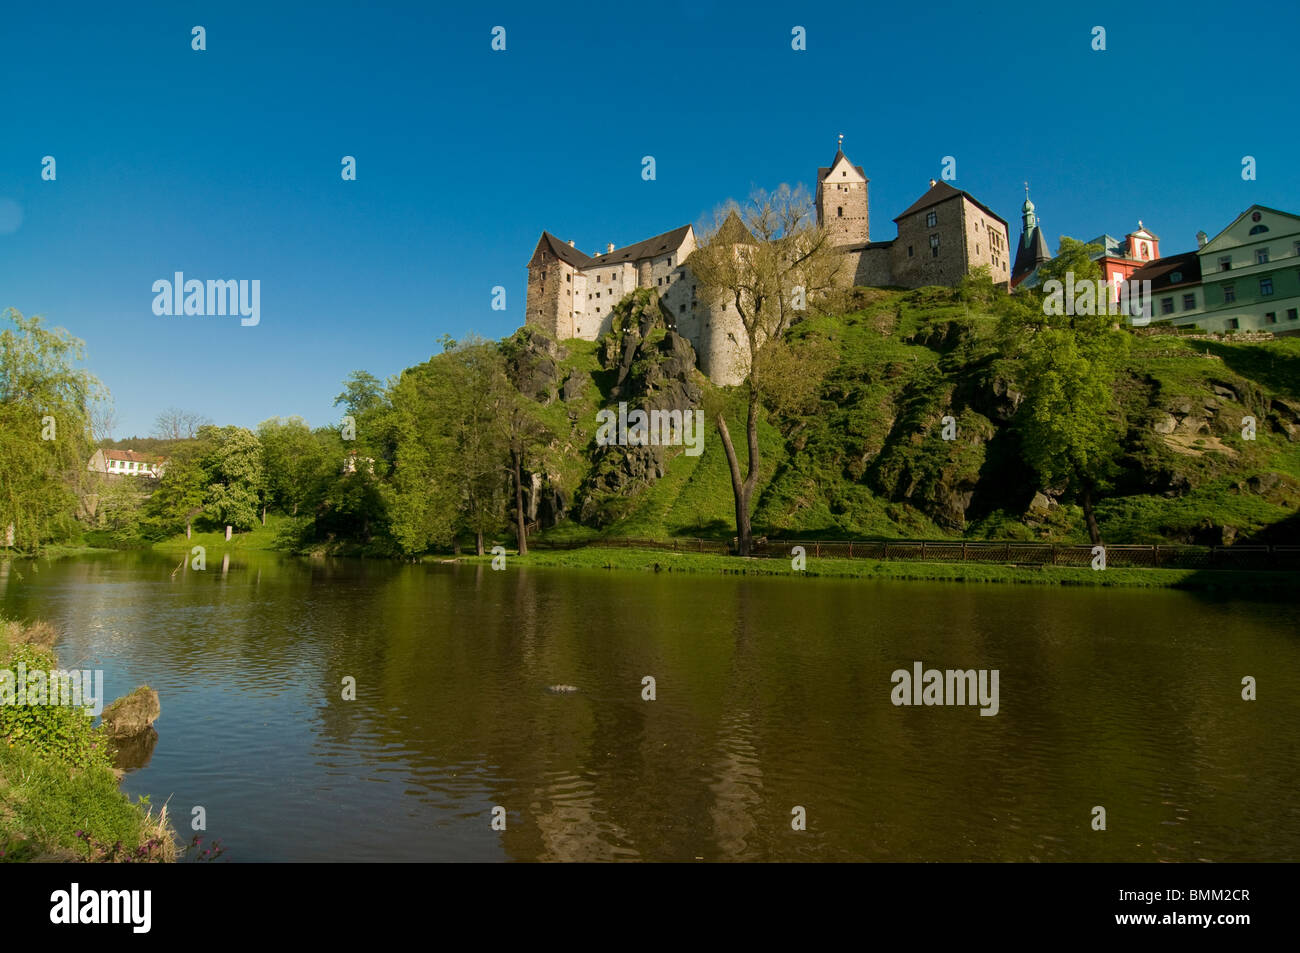 Castle of Loket on a hill. Loket. Czech Republic. Stock Photo